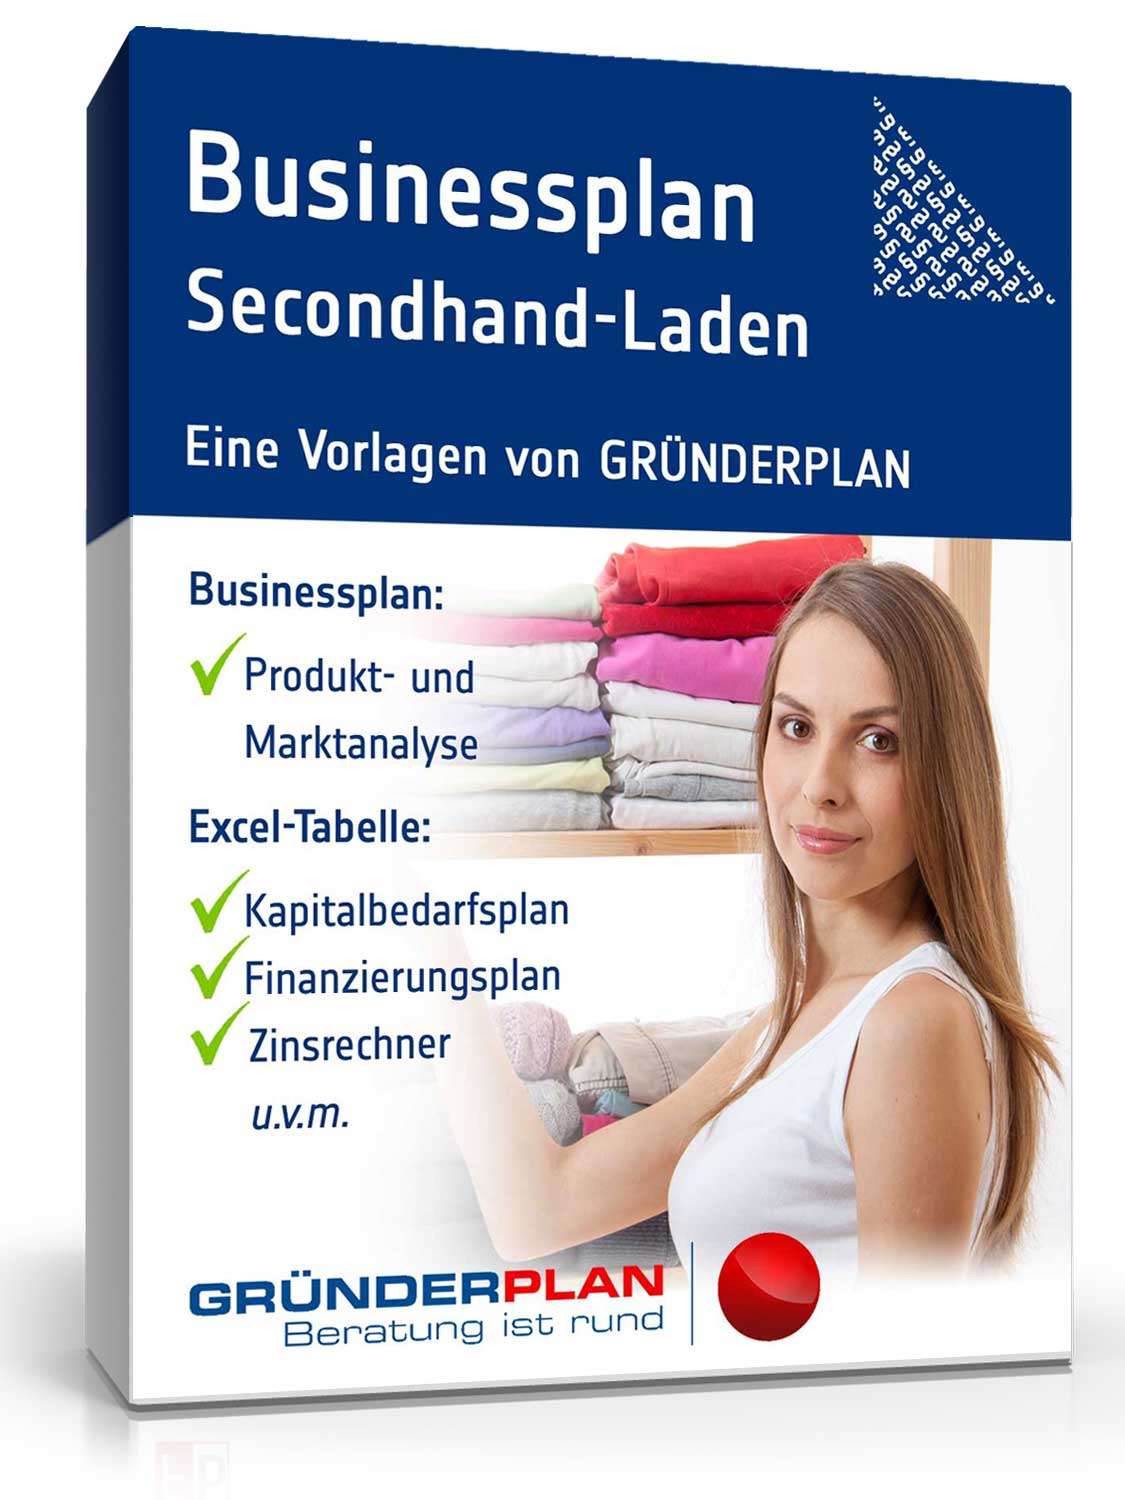 Hauptbild des Produkts: Businessplan Secondhand-Laden von Gründerplan